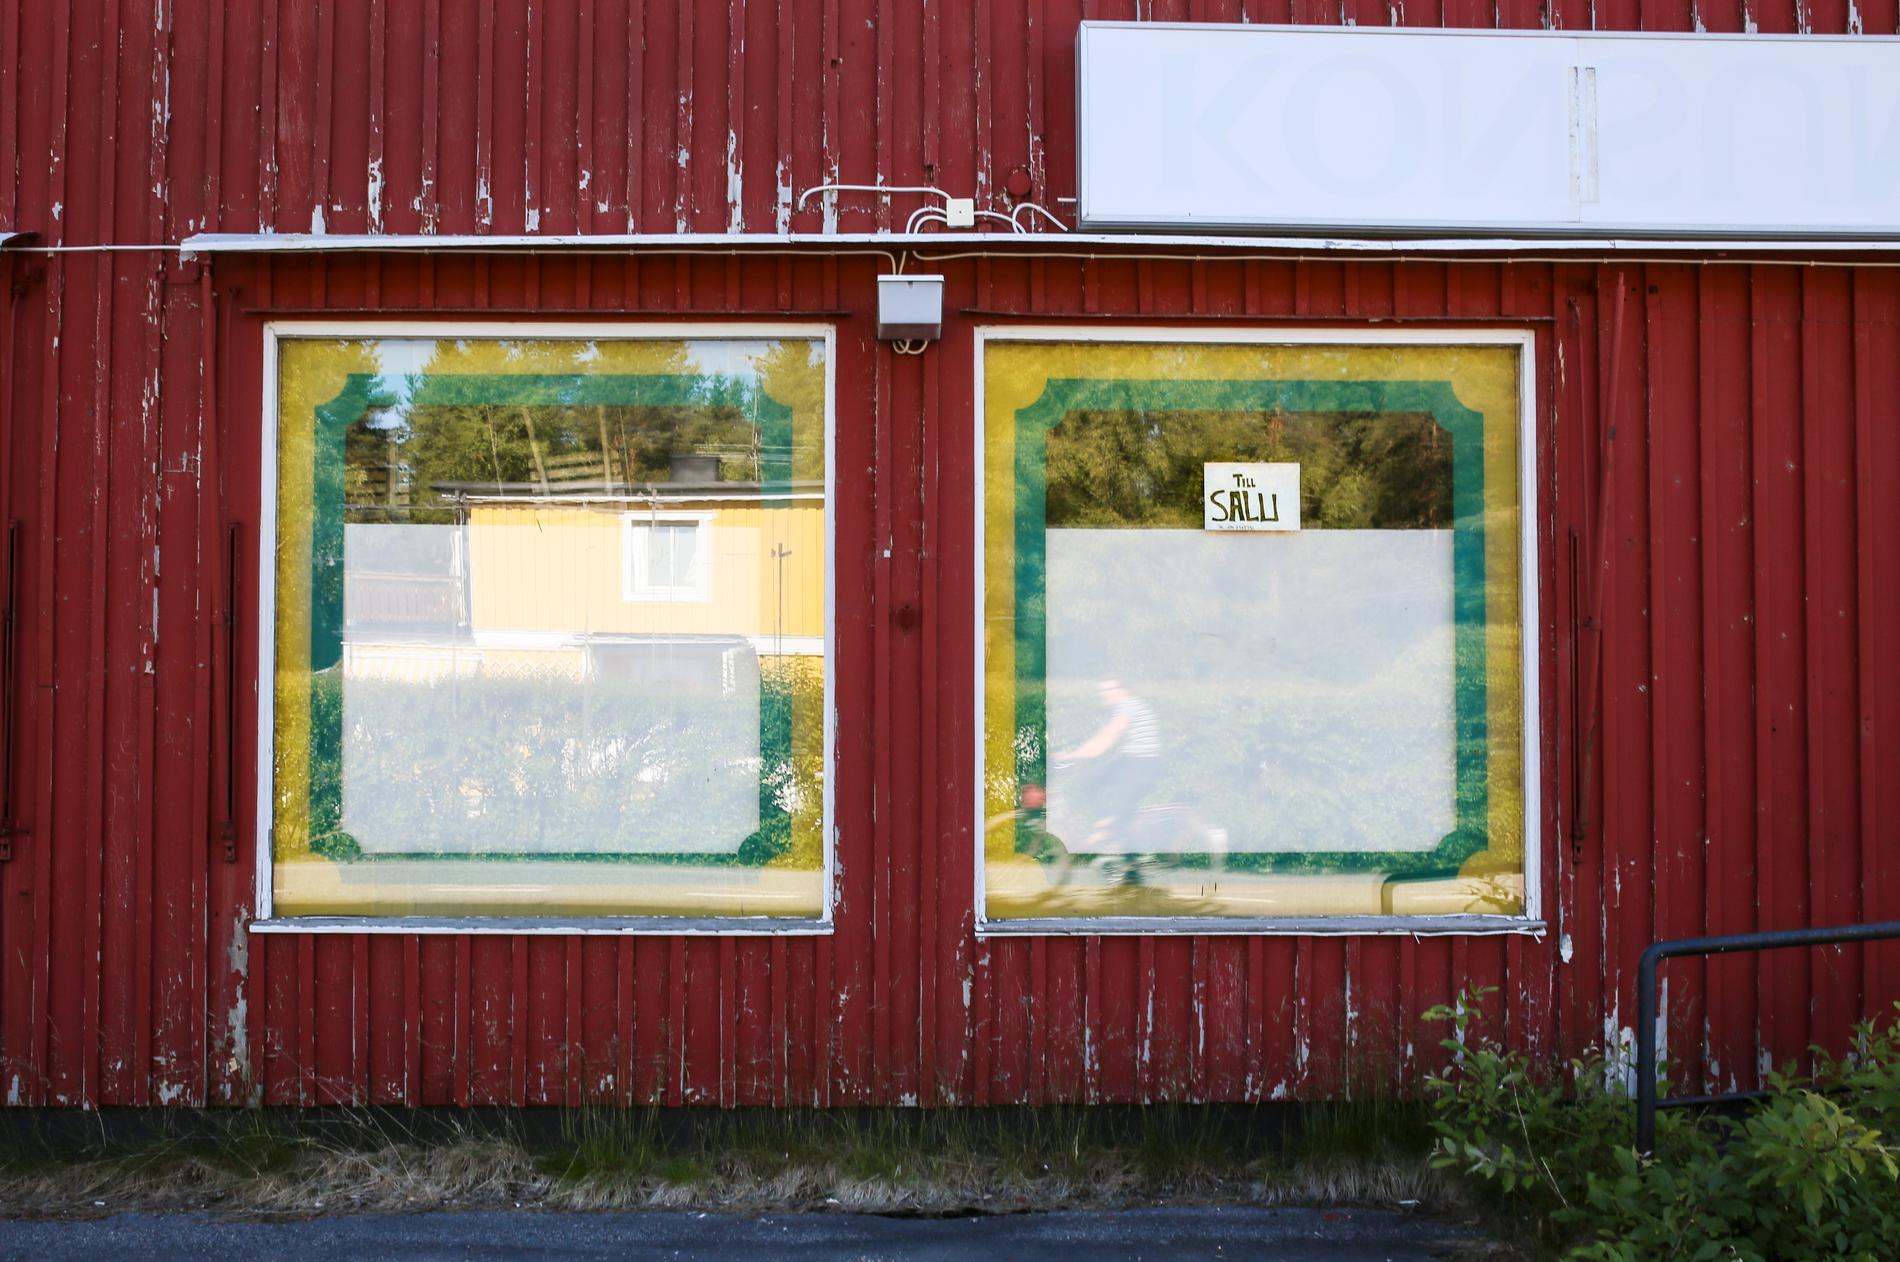 Många orter i Sverige saknar eller har långt till grundläggande tjänster. Här är en igenbommad lanthandel i Kalix kommun. Arkivbild.